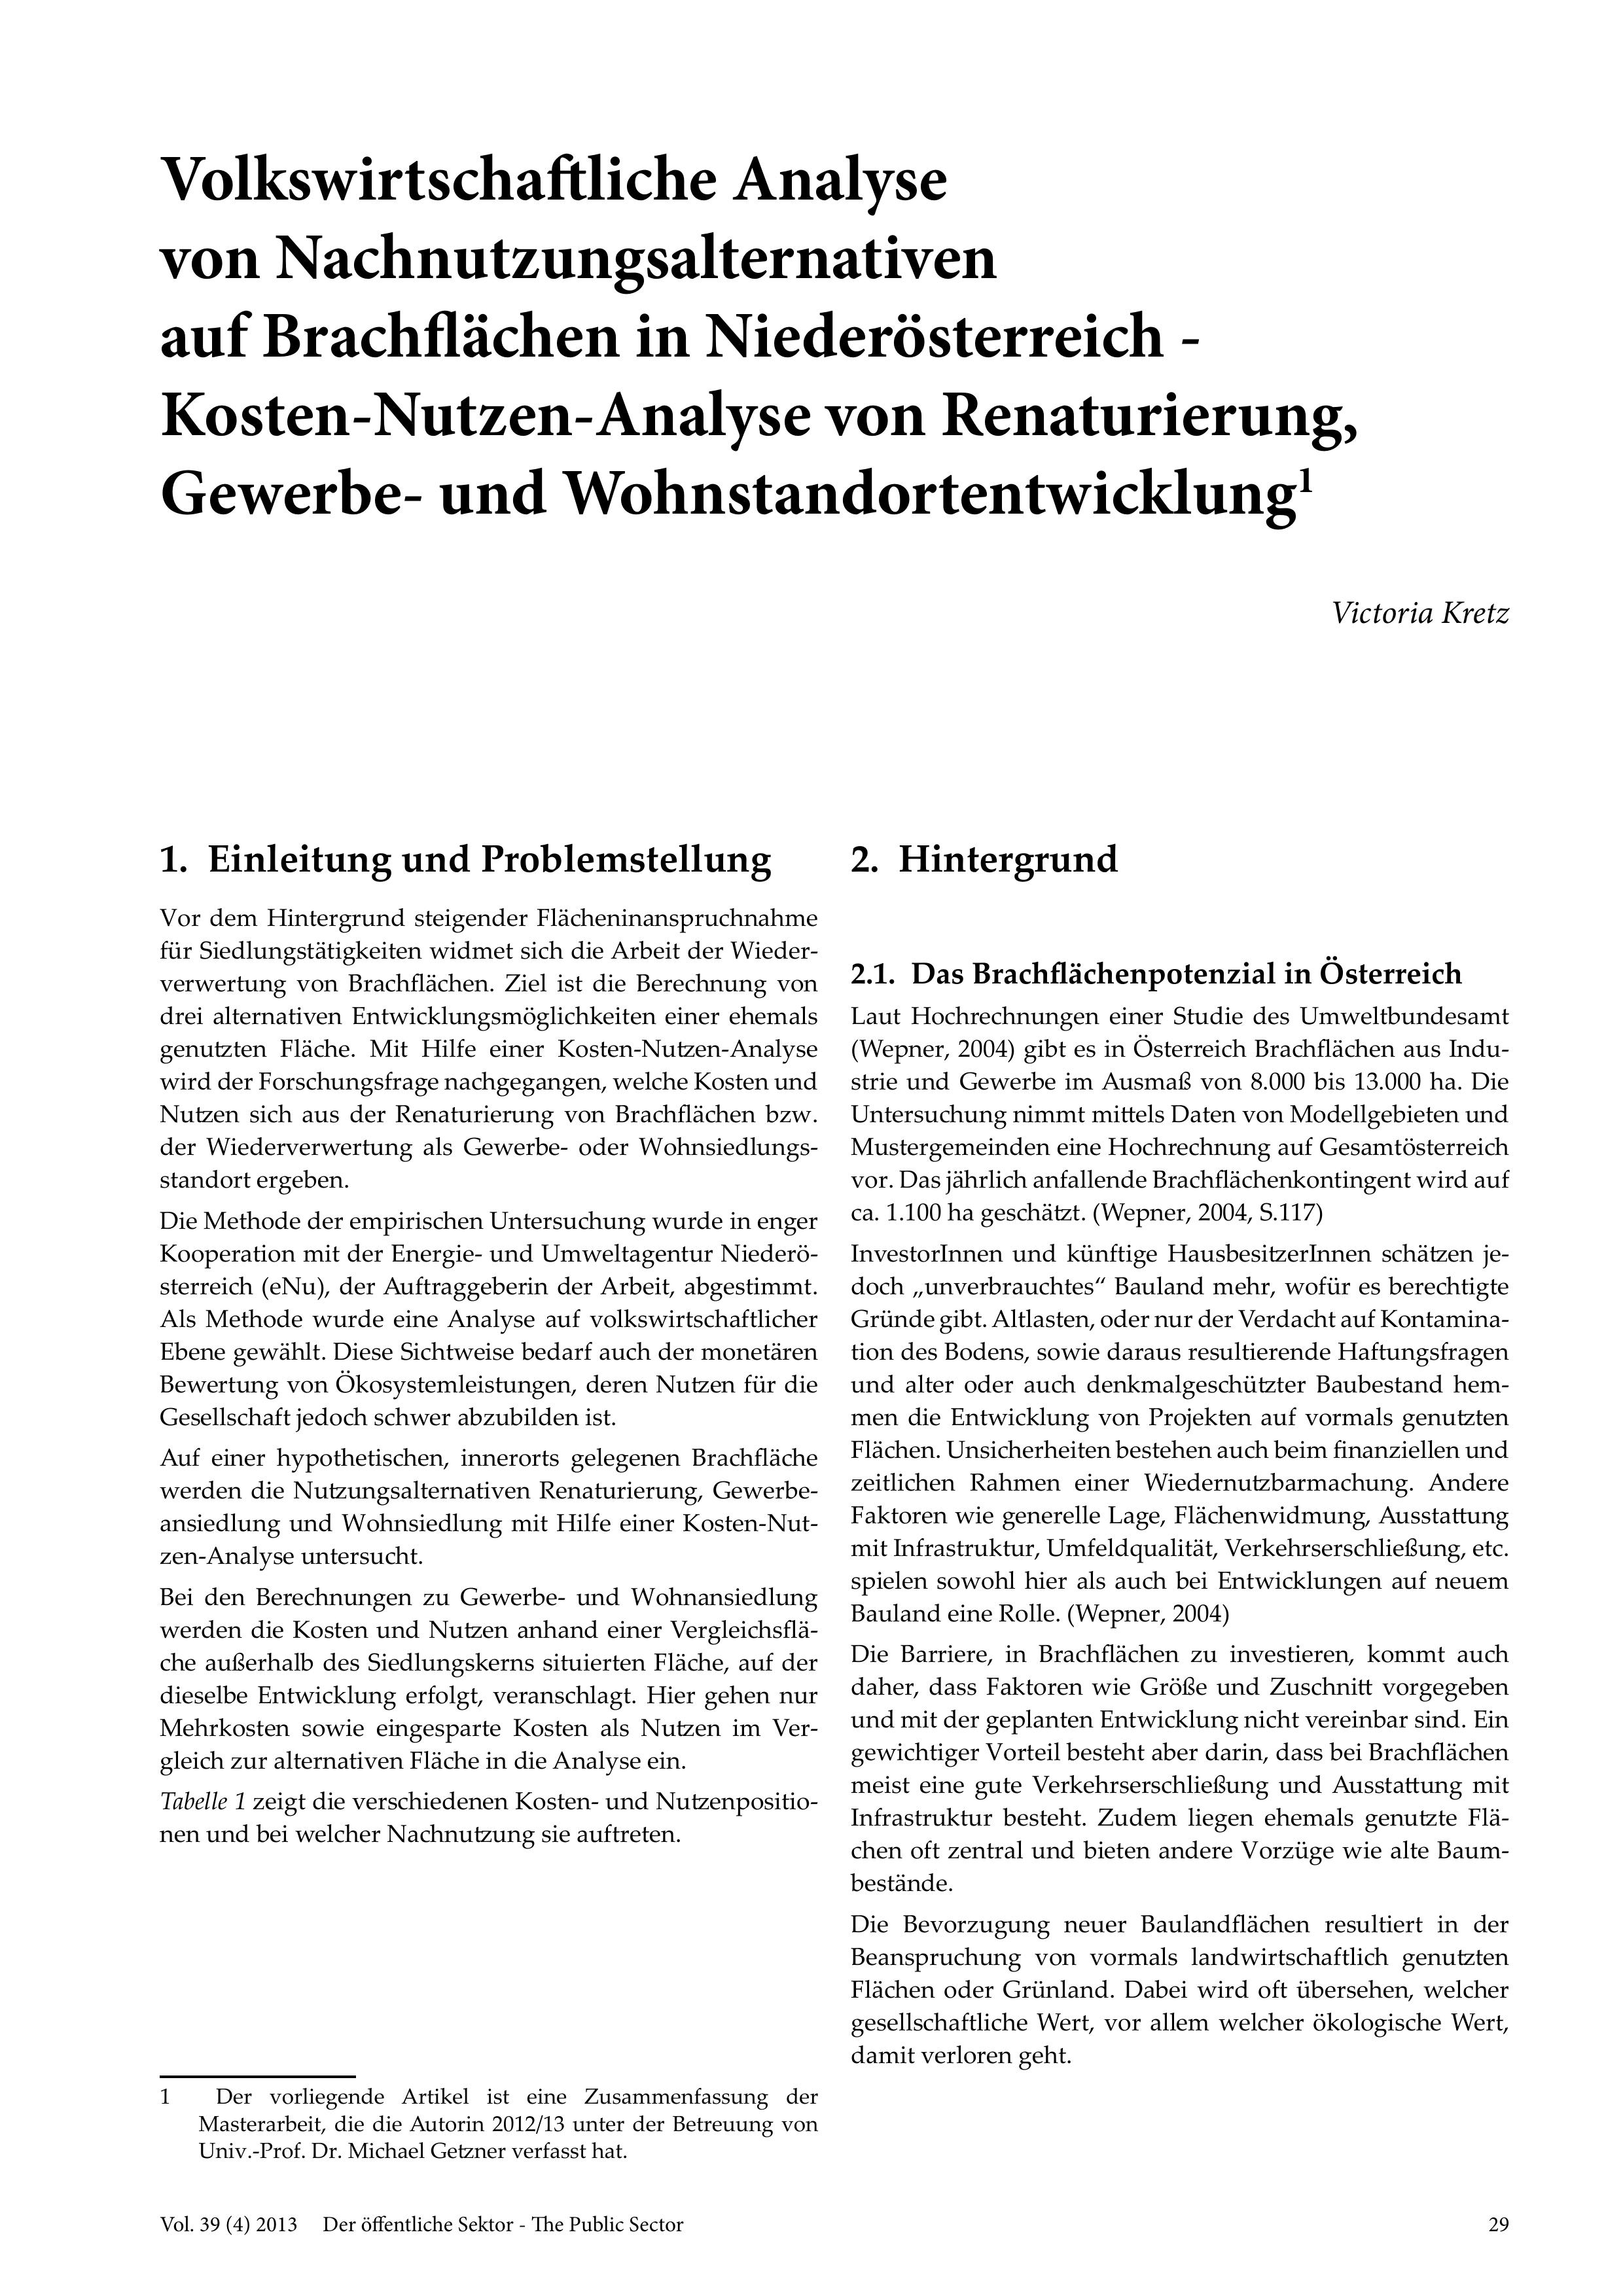 Volkswirtschaftliche Analyse von Nachnutzungsalternativen auf Brachflächen in Niederösterreich - Kosten-Nutzen-Analyse von Renaturierung, Gewerbe- und Wohnstandortentwicklung